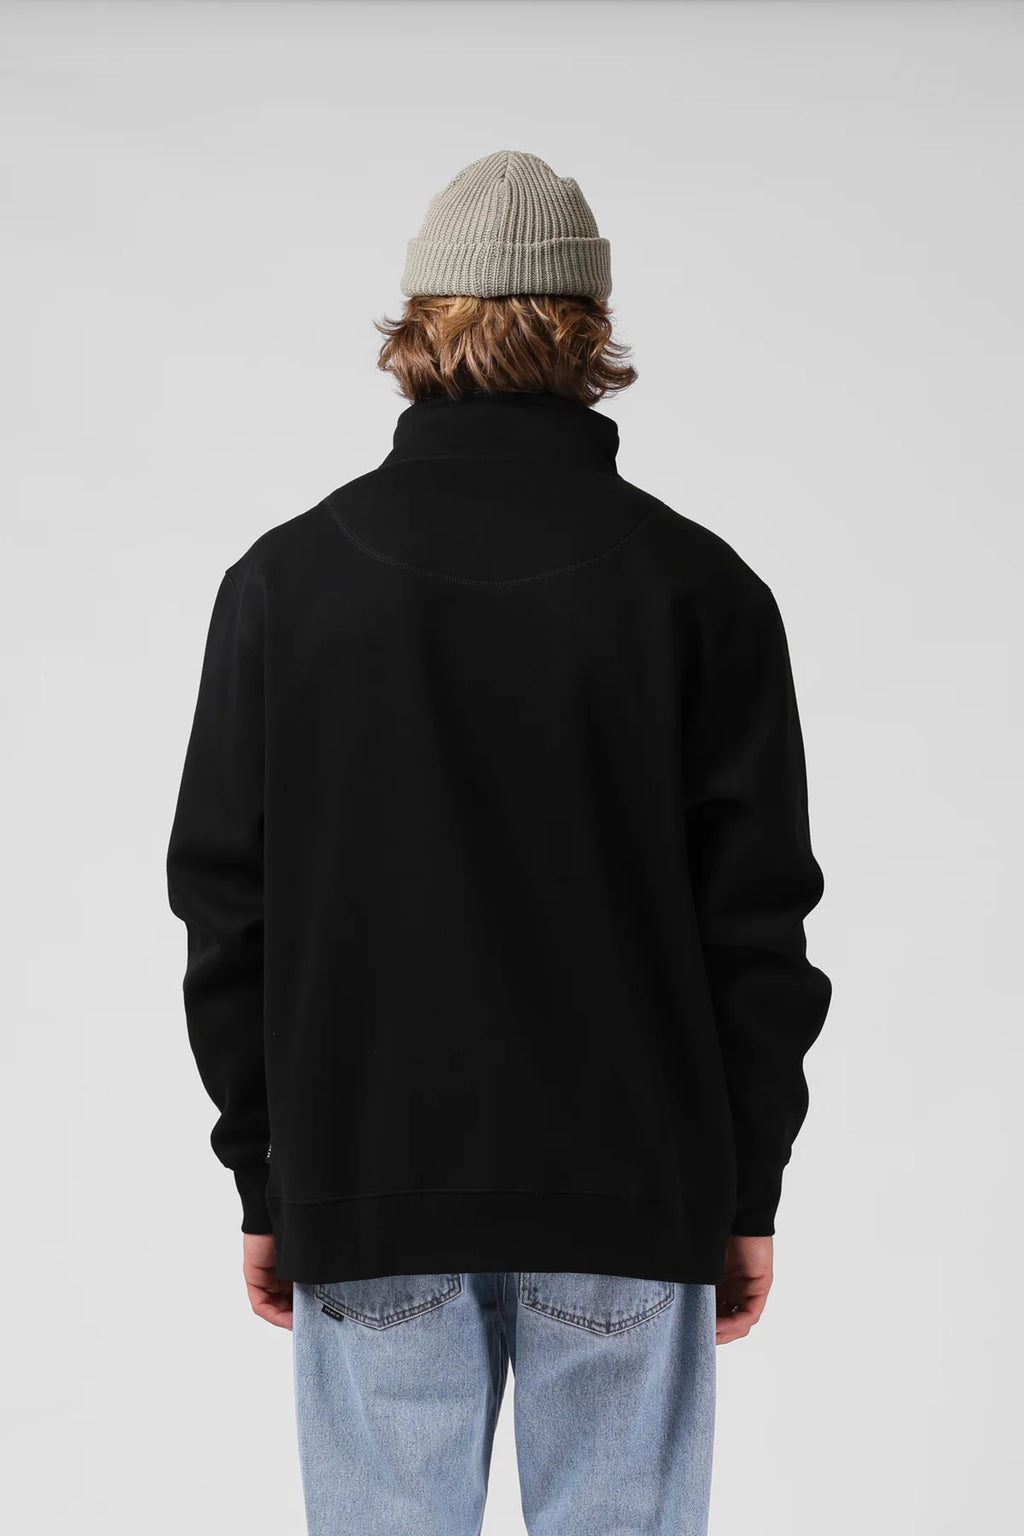 1/4 Zip Sweater- Black